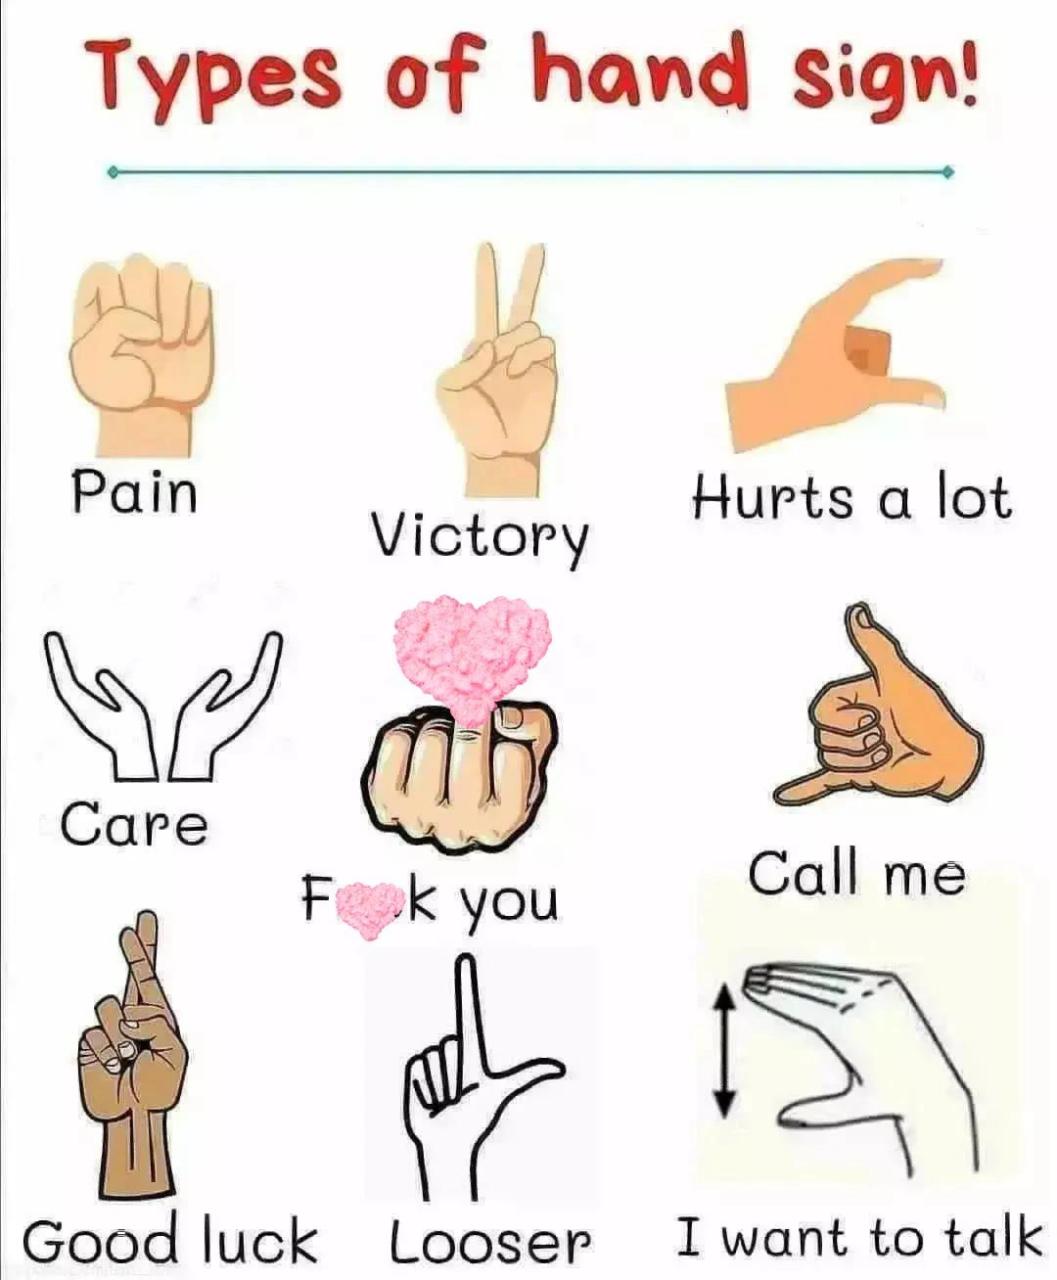 手势代表的意思图图片